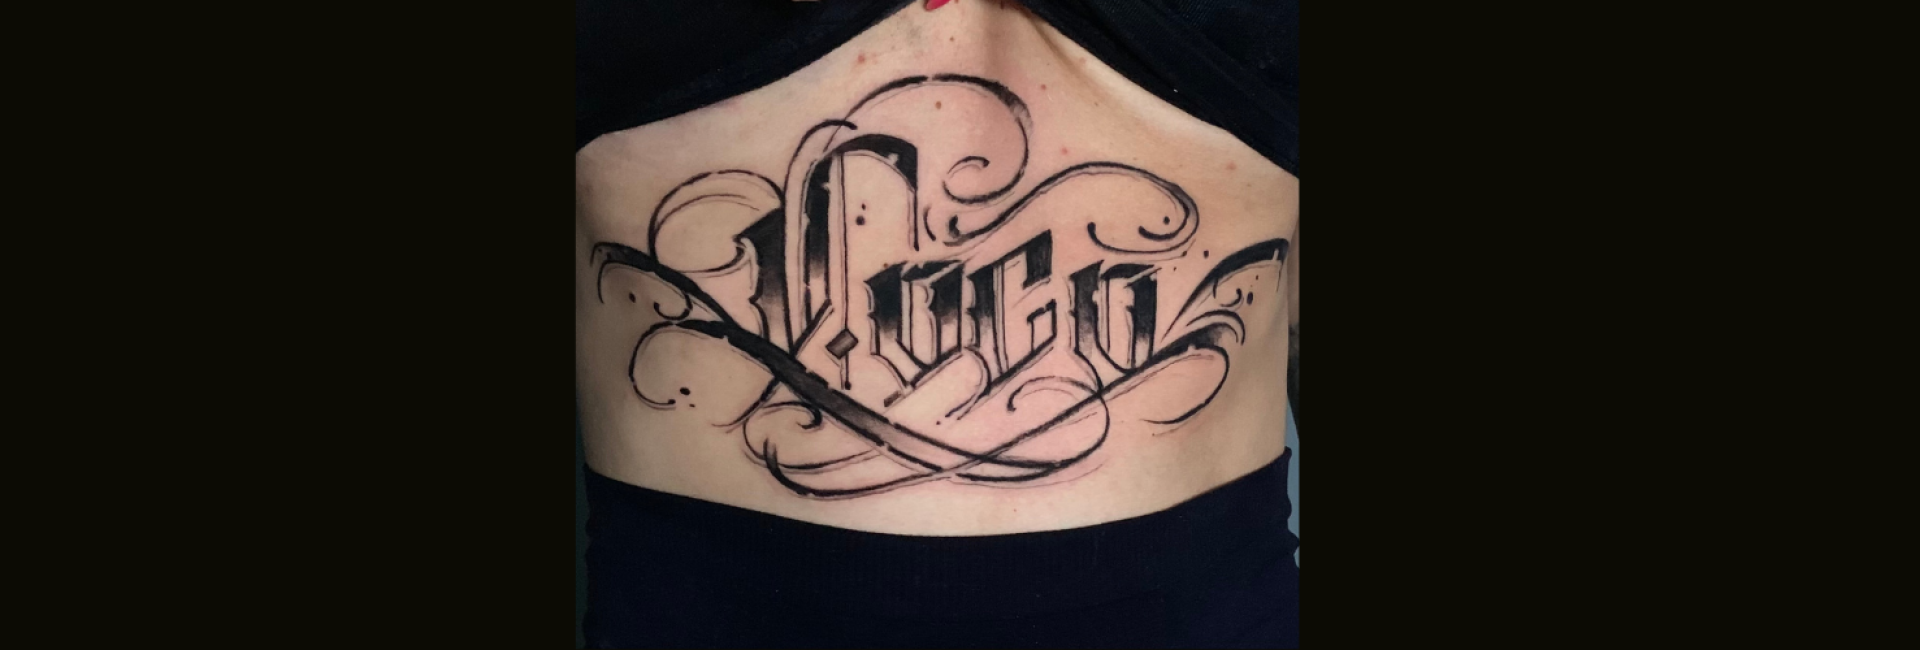 tattoo studio eindhoven banita